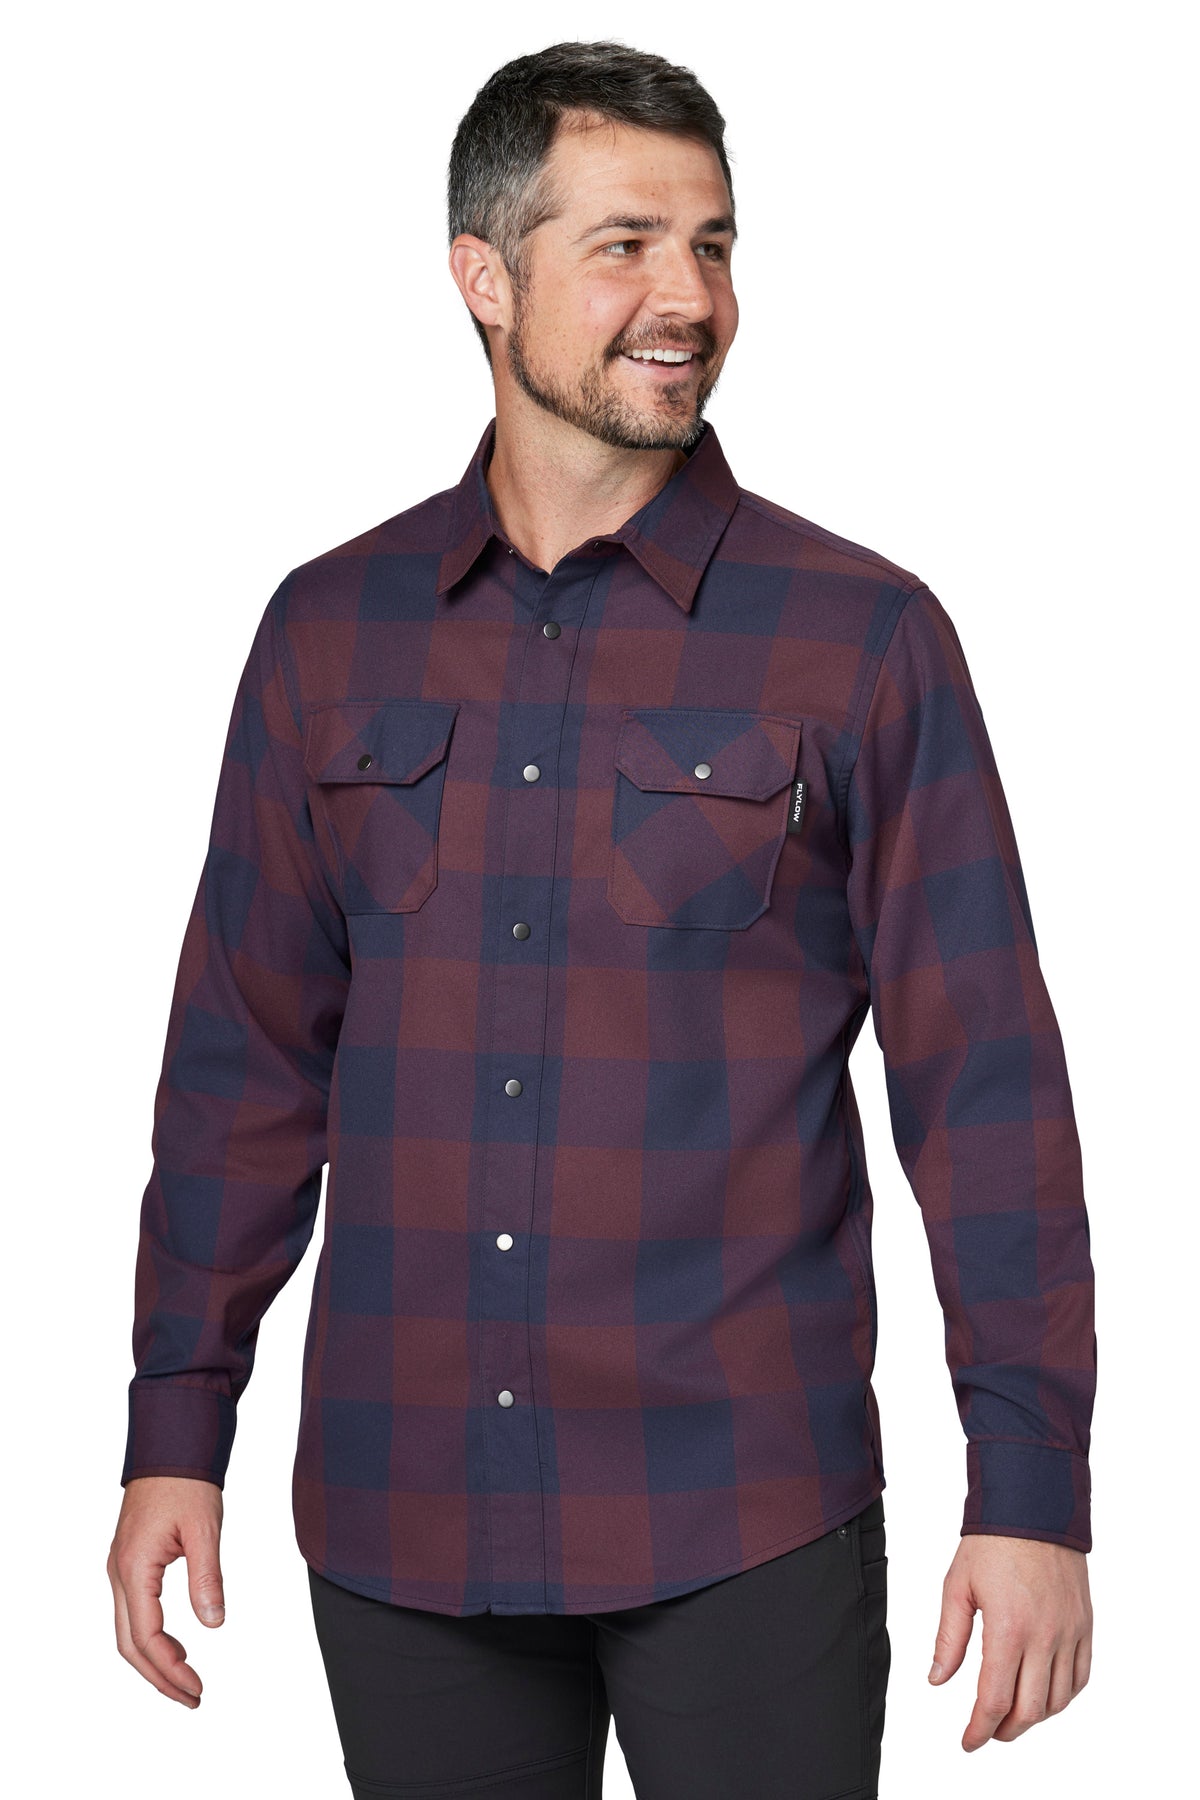 Handlebar Tech Flannel - Men's Flannel Shirt